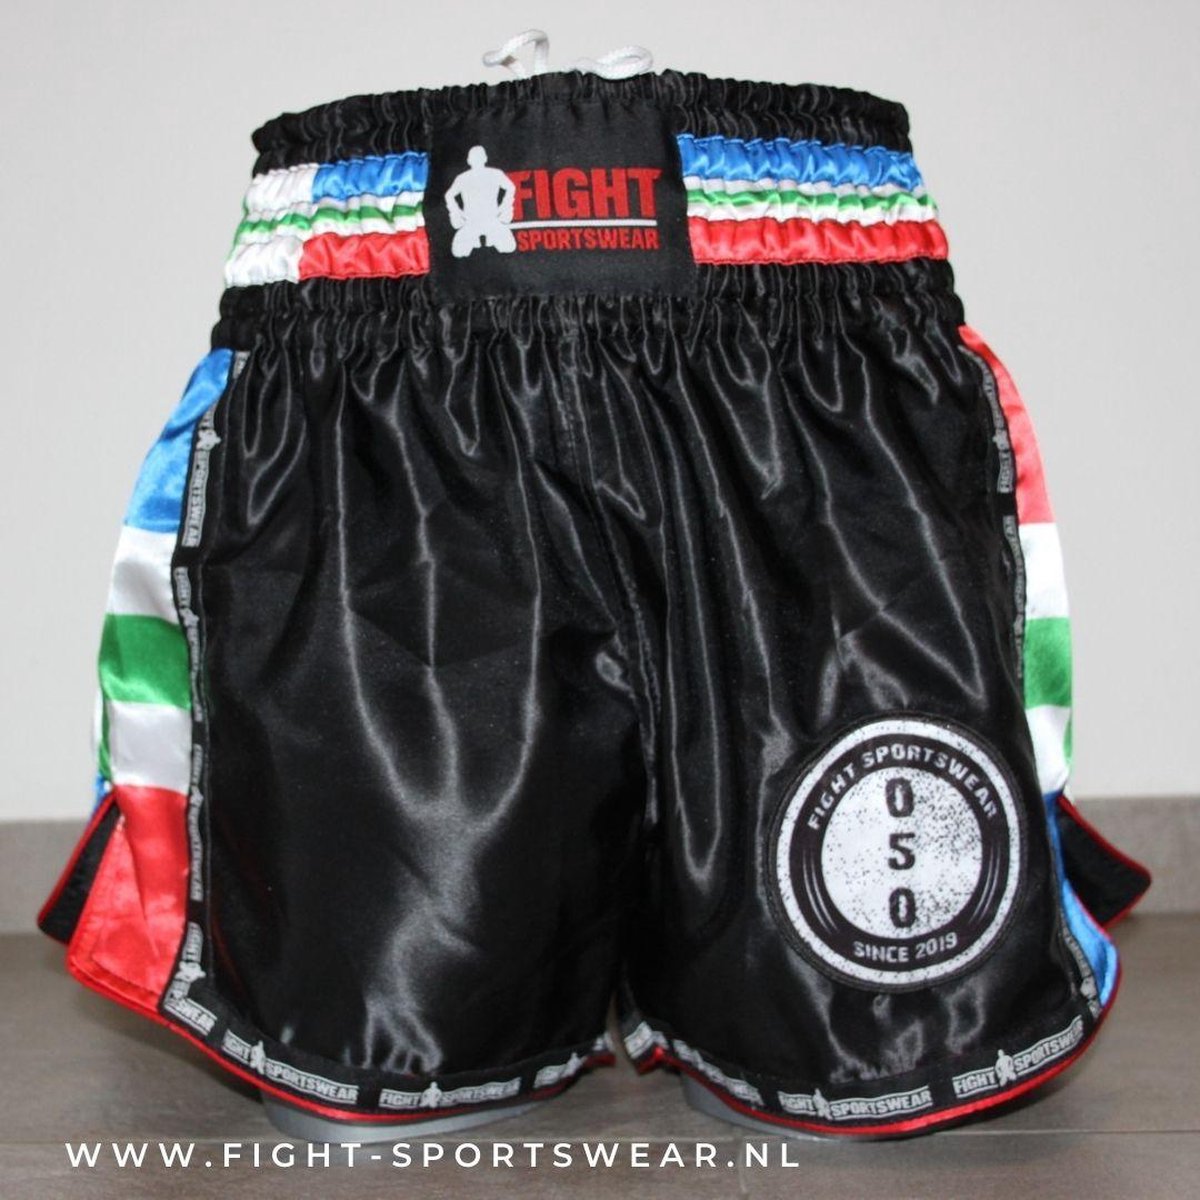 kickboks broekje Groningse vlag fight-sportswear xl